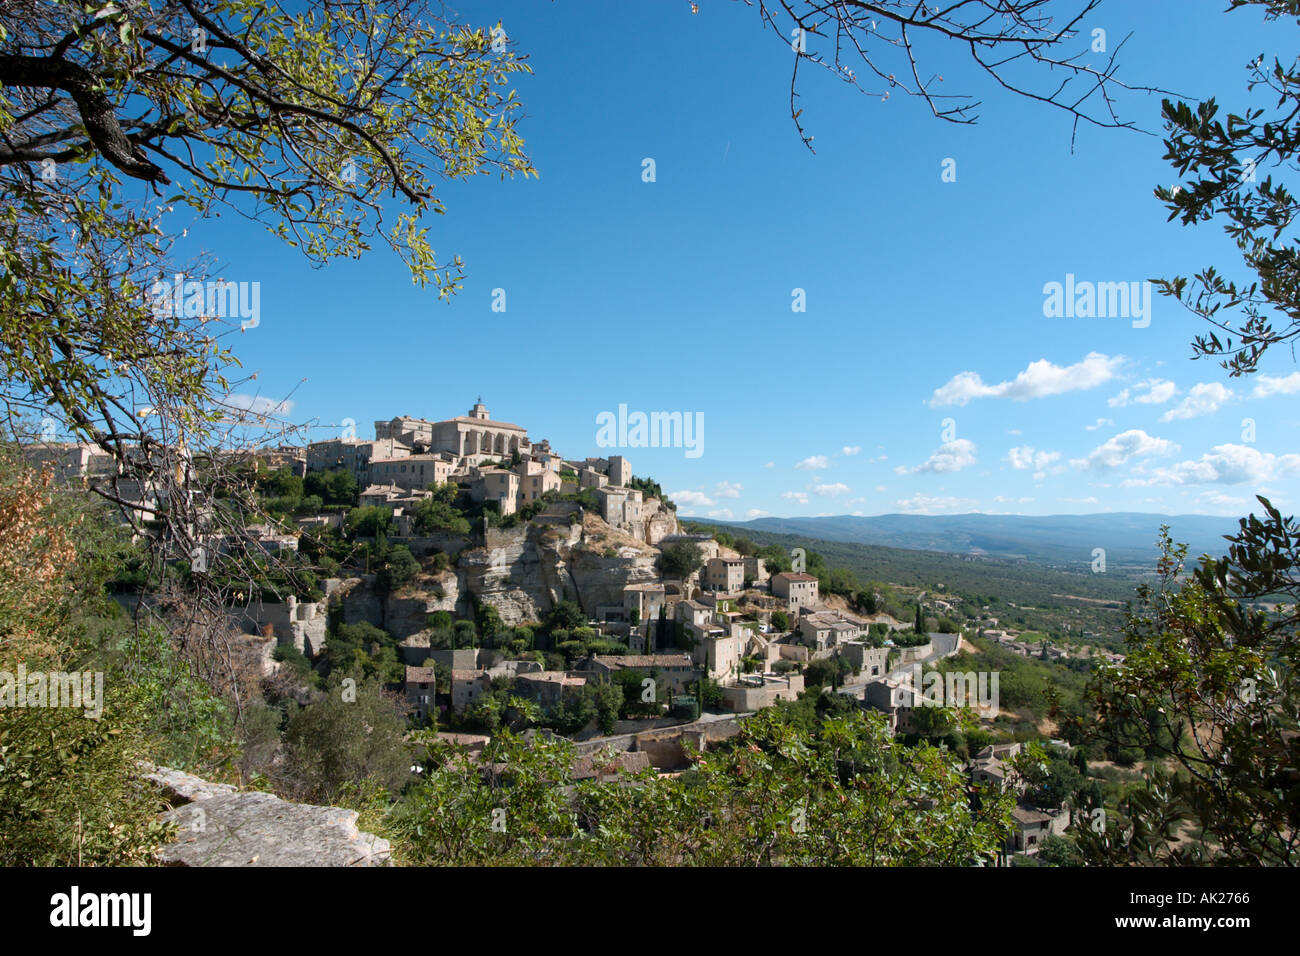 Le village de Gordes, Vaucluse, Provence, France Banque D'Images